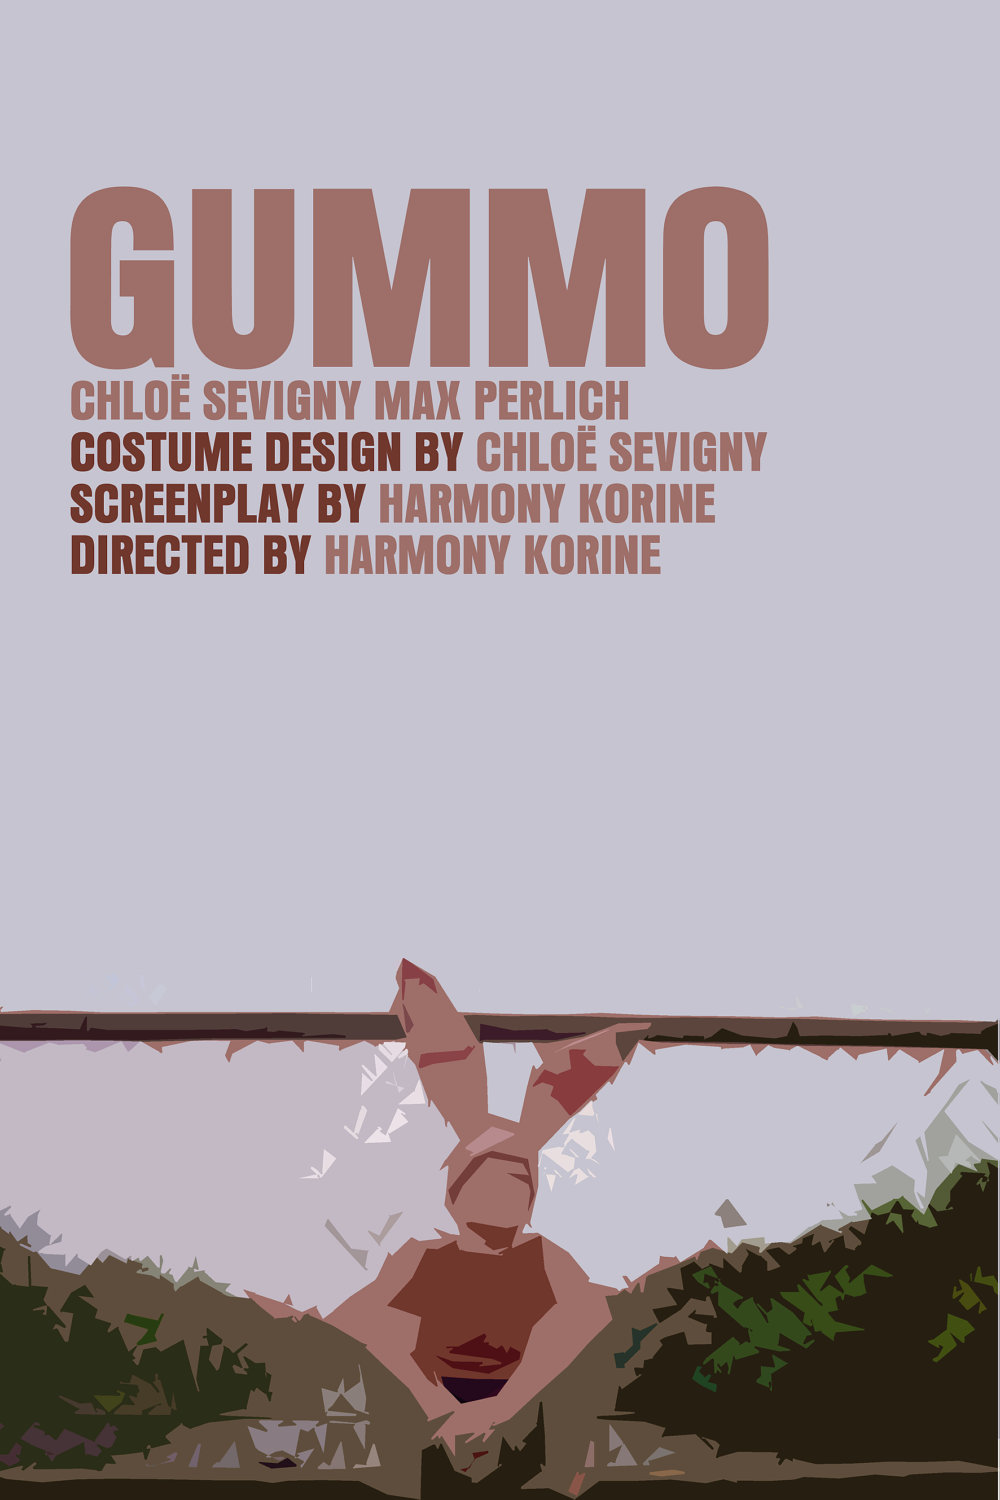 Фотографии, постеры и кадры из фильма Гуммо.